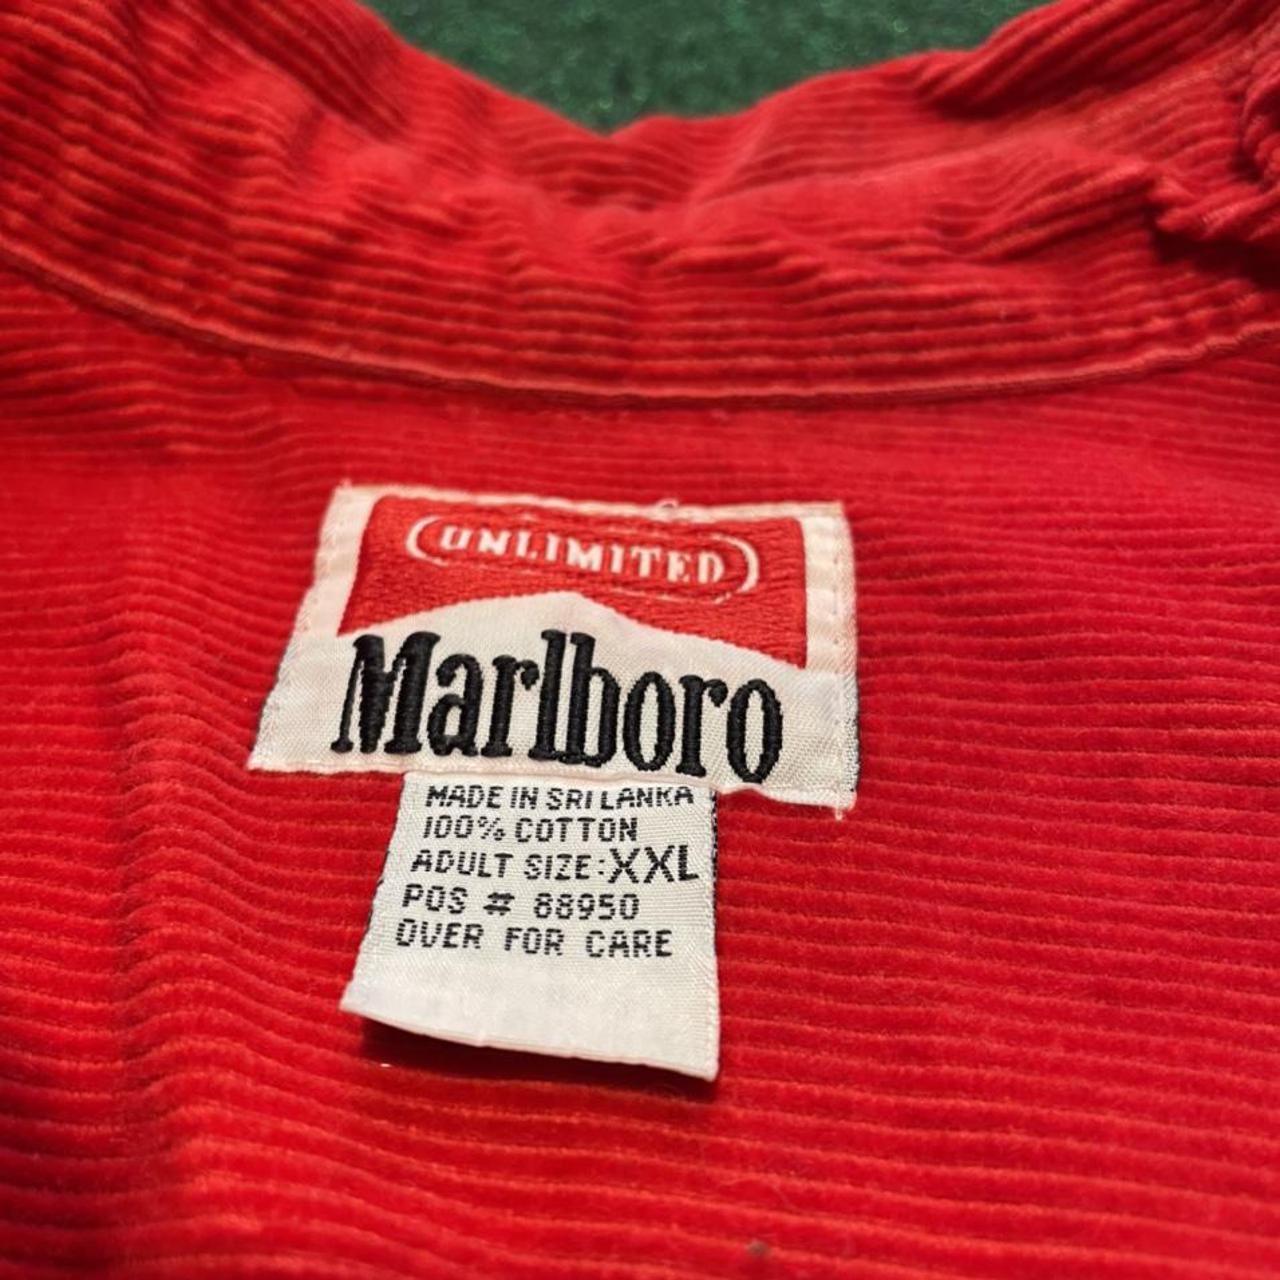 Product Image 3 - Vintage Corduroy Marlboro jacket. It’s